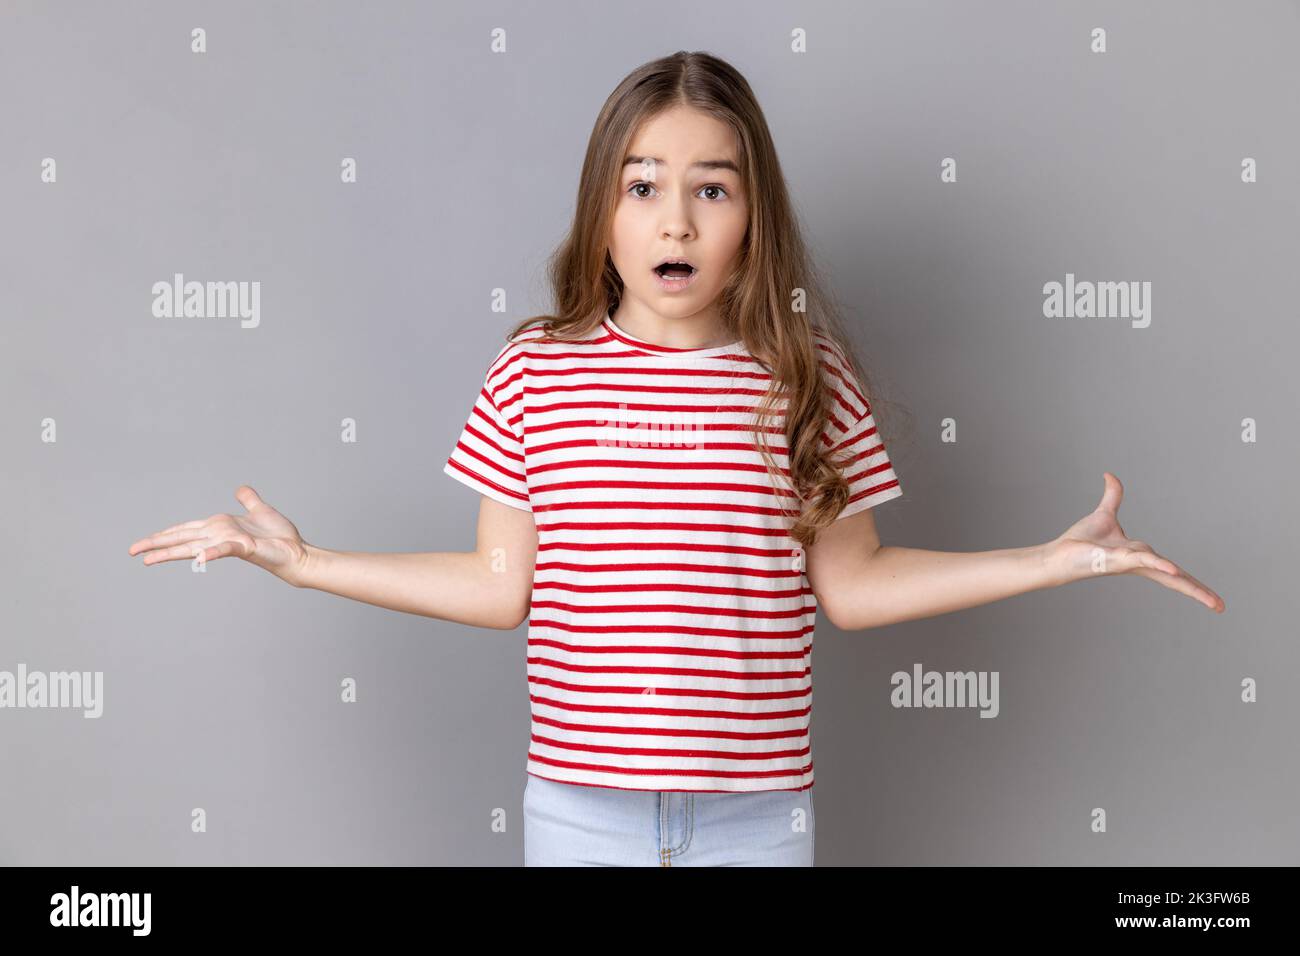 Cosa vuoi. Ritratto di bambina che indossa T-shirt a righe in piedi con mani sollevate e sorpresa indignata espressione, chiedendo quale motivo. Studio in interni isolato su sfondo grigio. Foto Stock